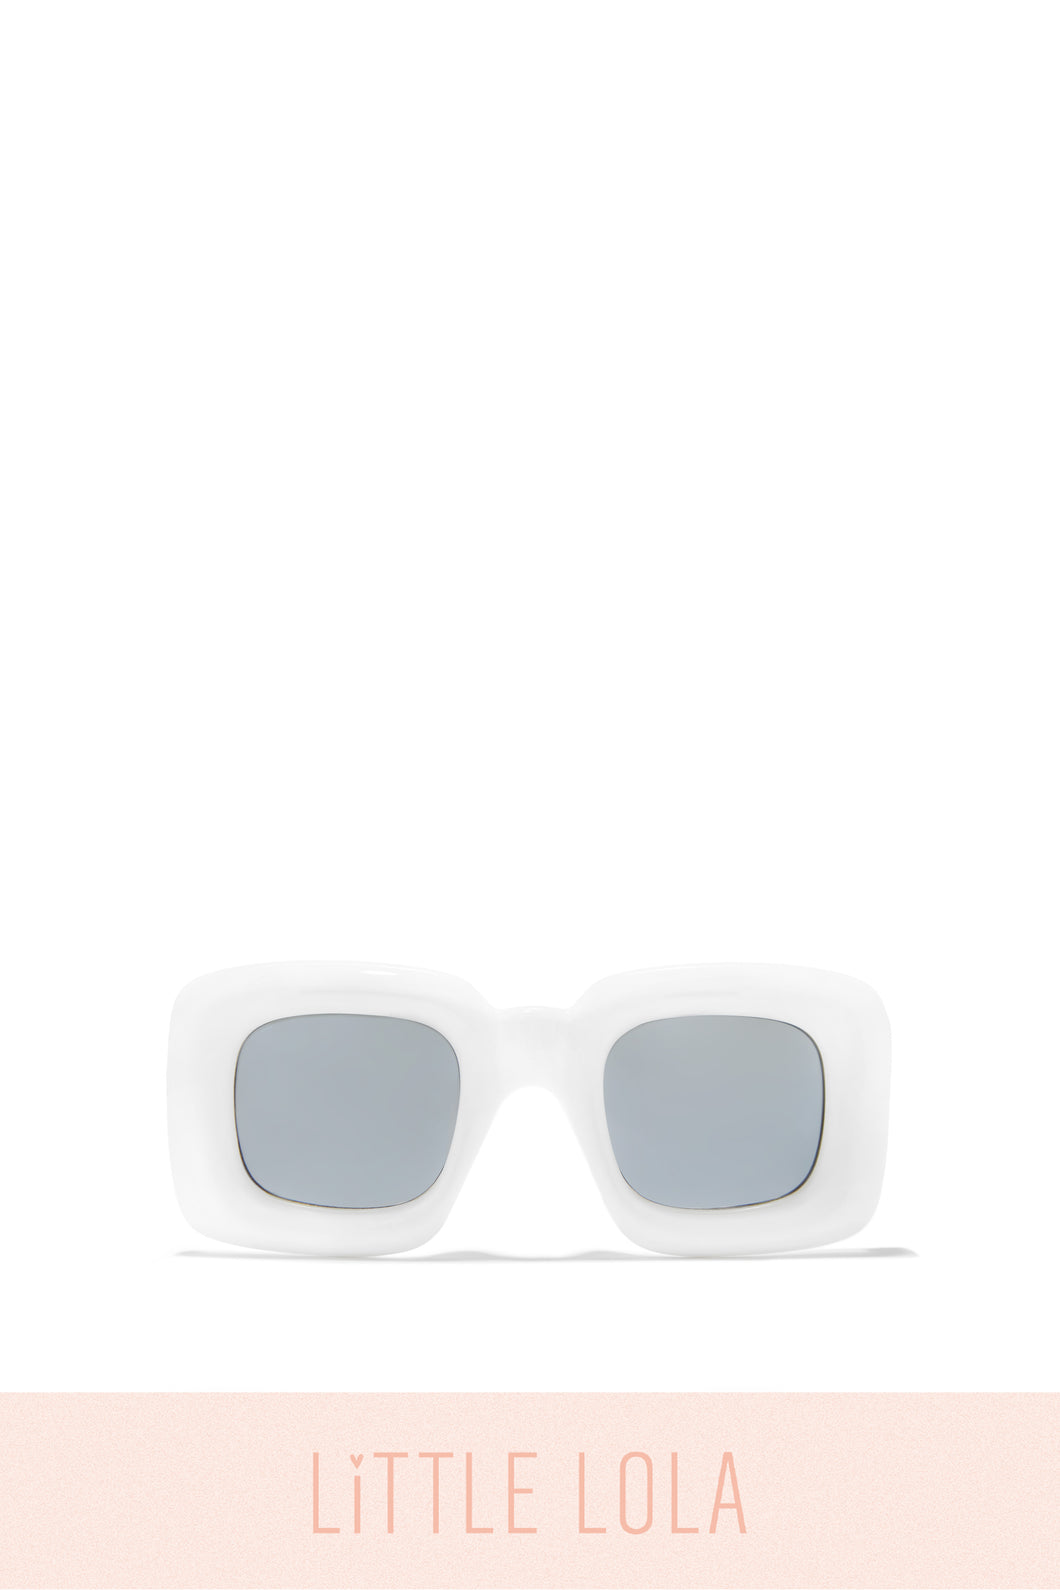 White Chunky Frame Sunglasses For Girls